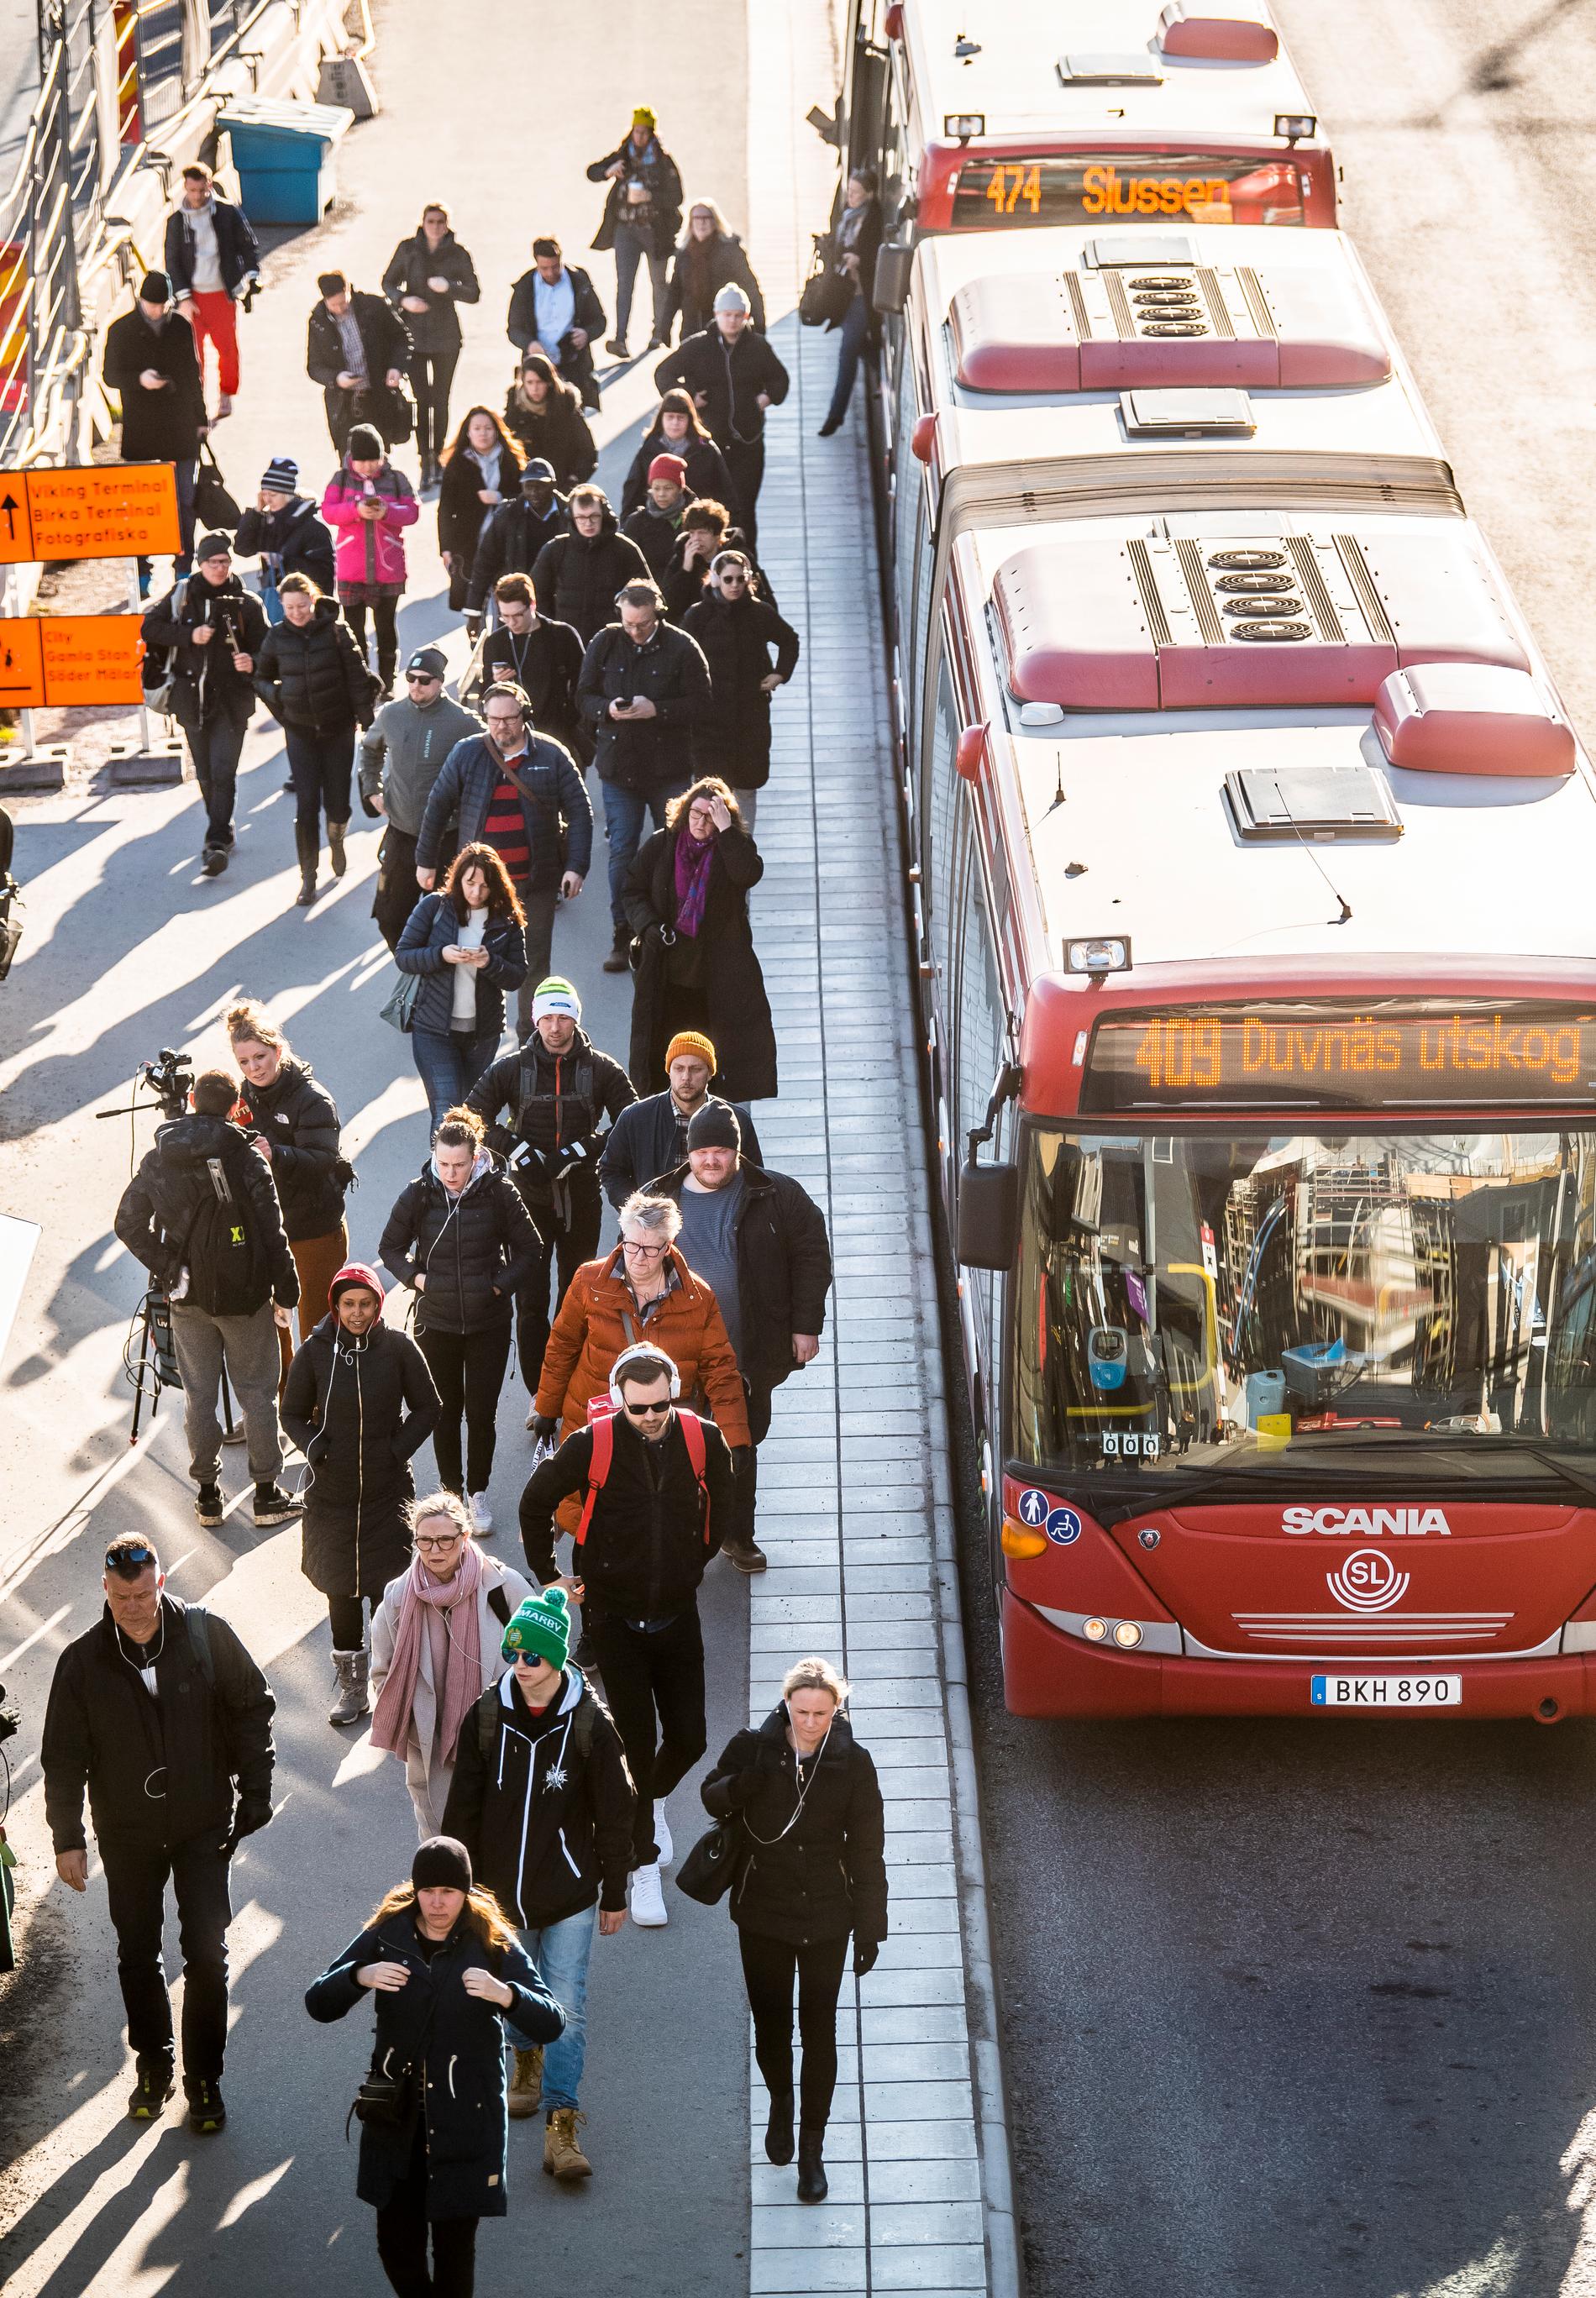  Trots restriktionerna rör sig många svenskar i kollektivtrafiken, utan munskydd.